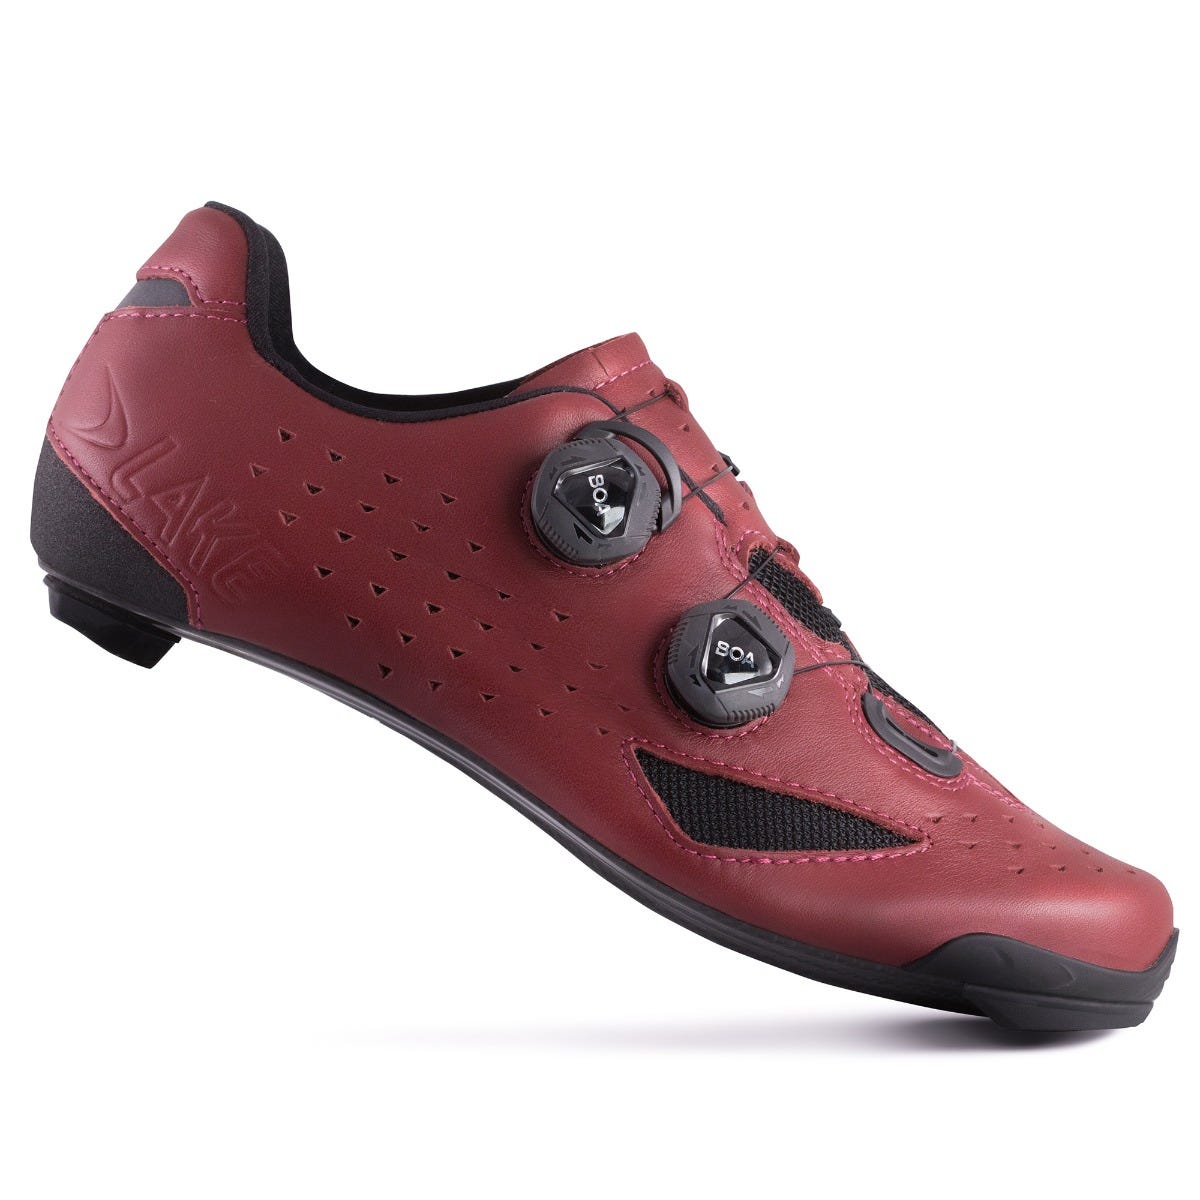 Lake CX238 Carbon Men's SPD Road Cycling Shoes Burgundy - EU 46